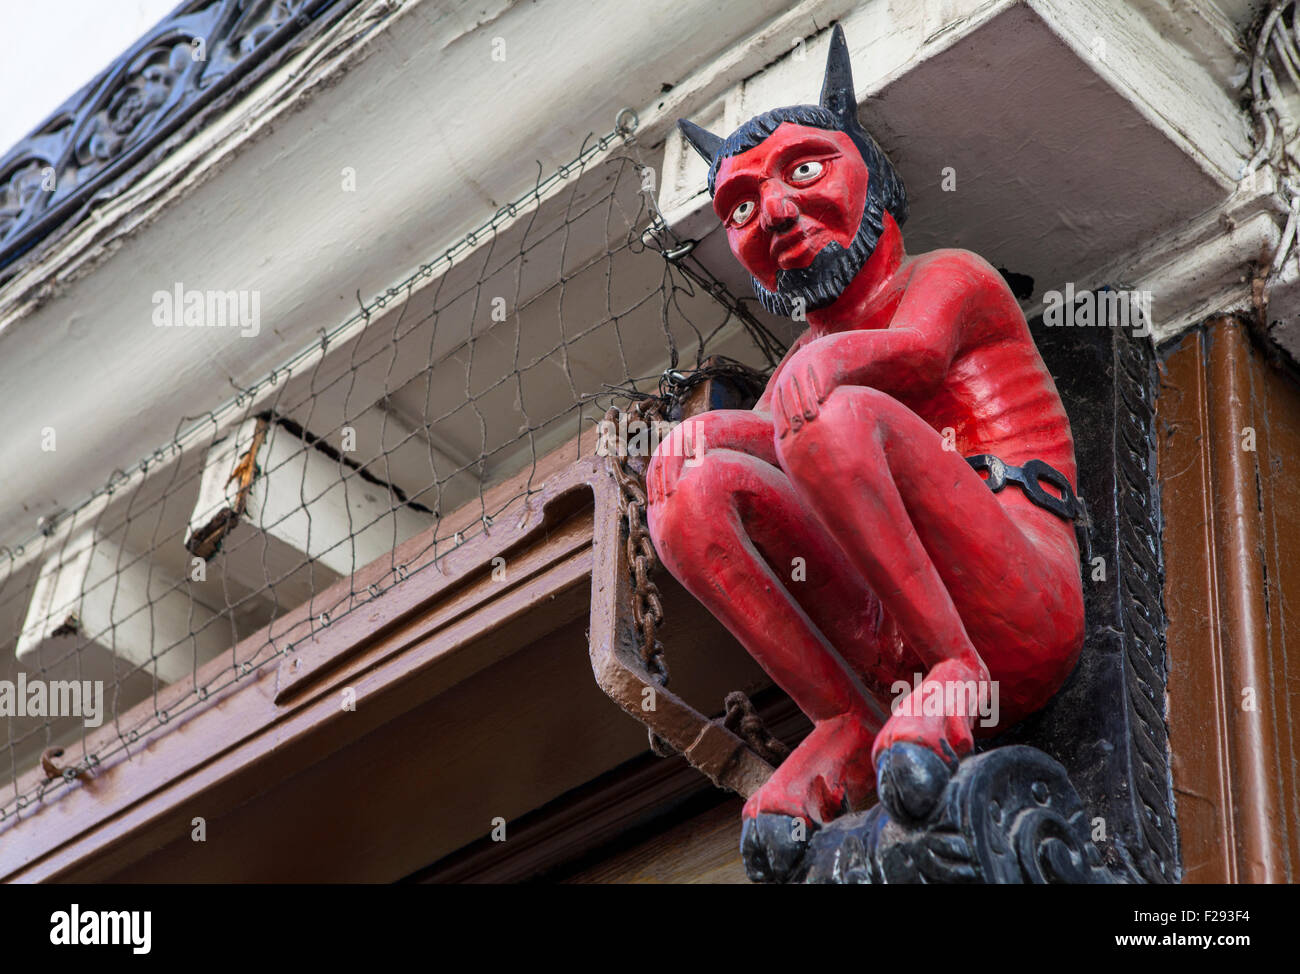 Le fameux petit diable rouge statue situé dans Stonegate, New York. Banque D'Images